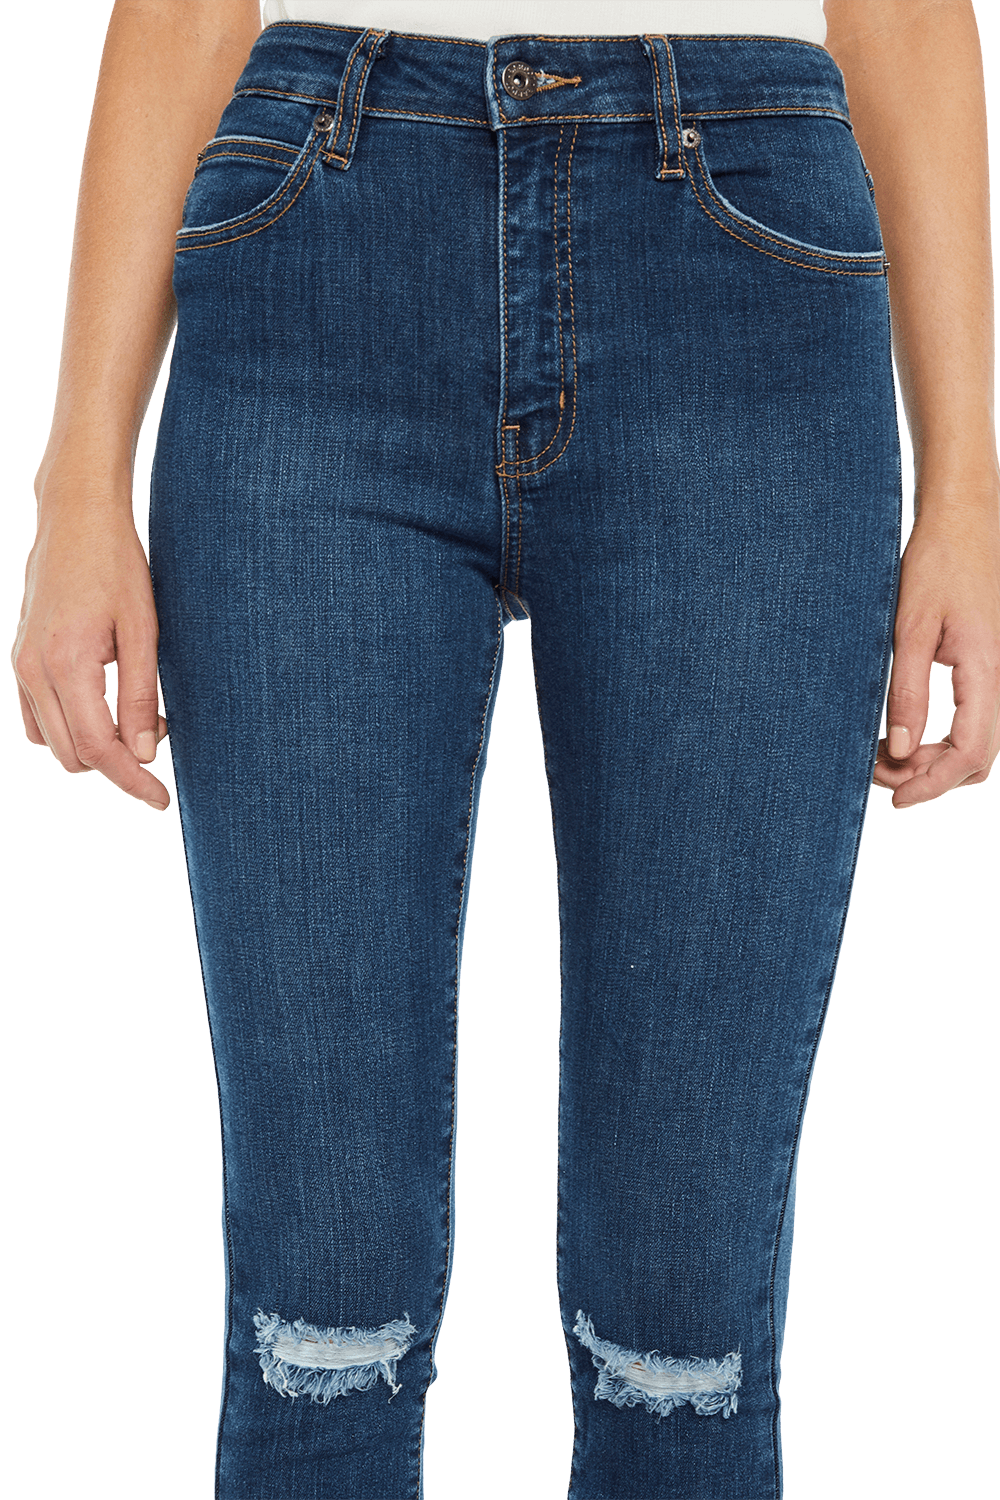 bardot khloe jeans